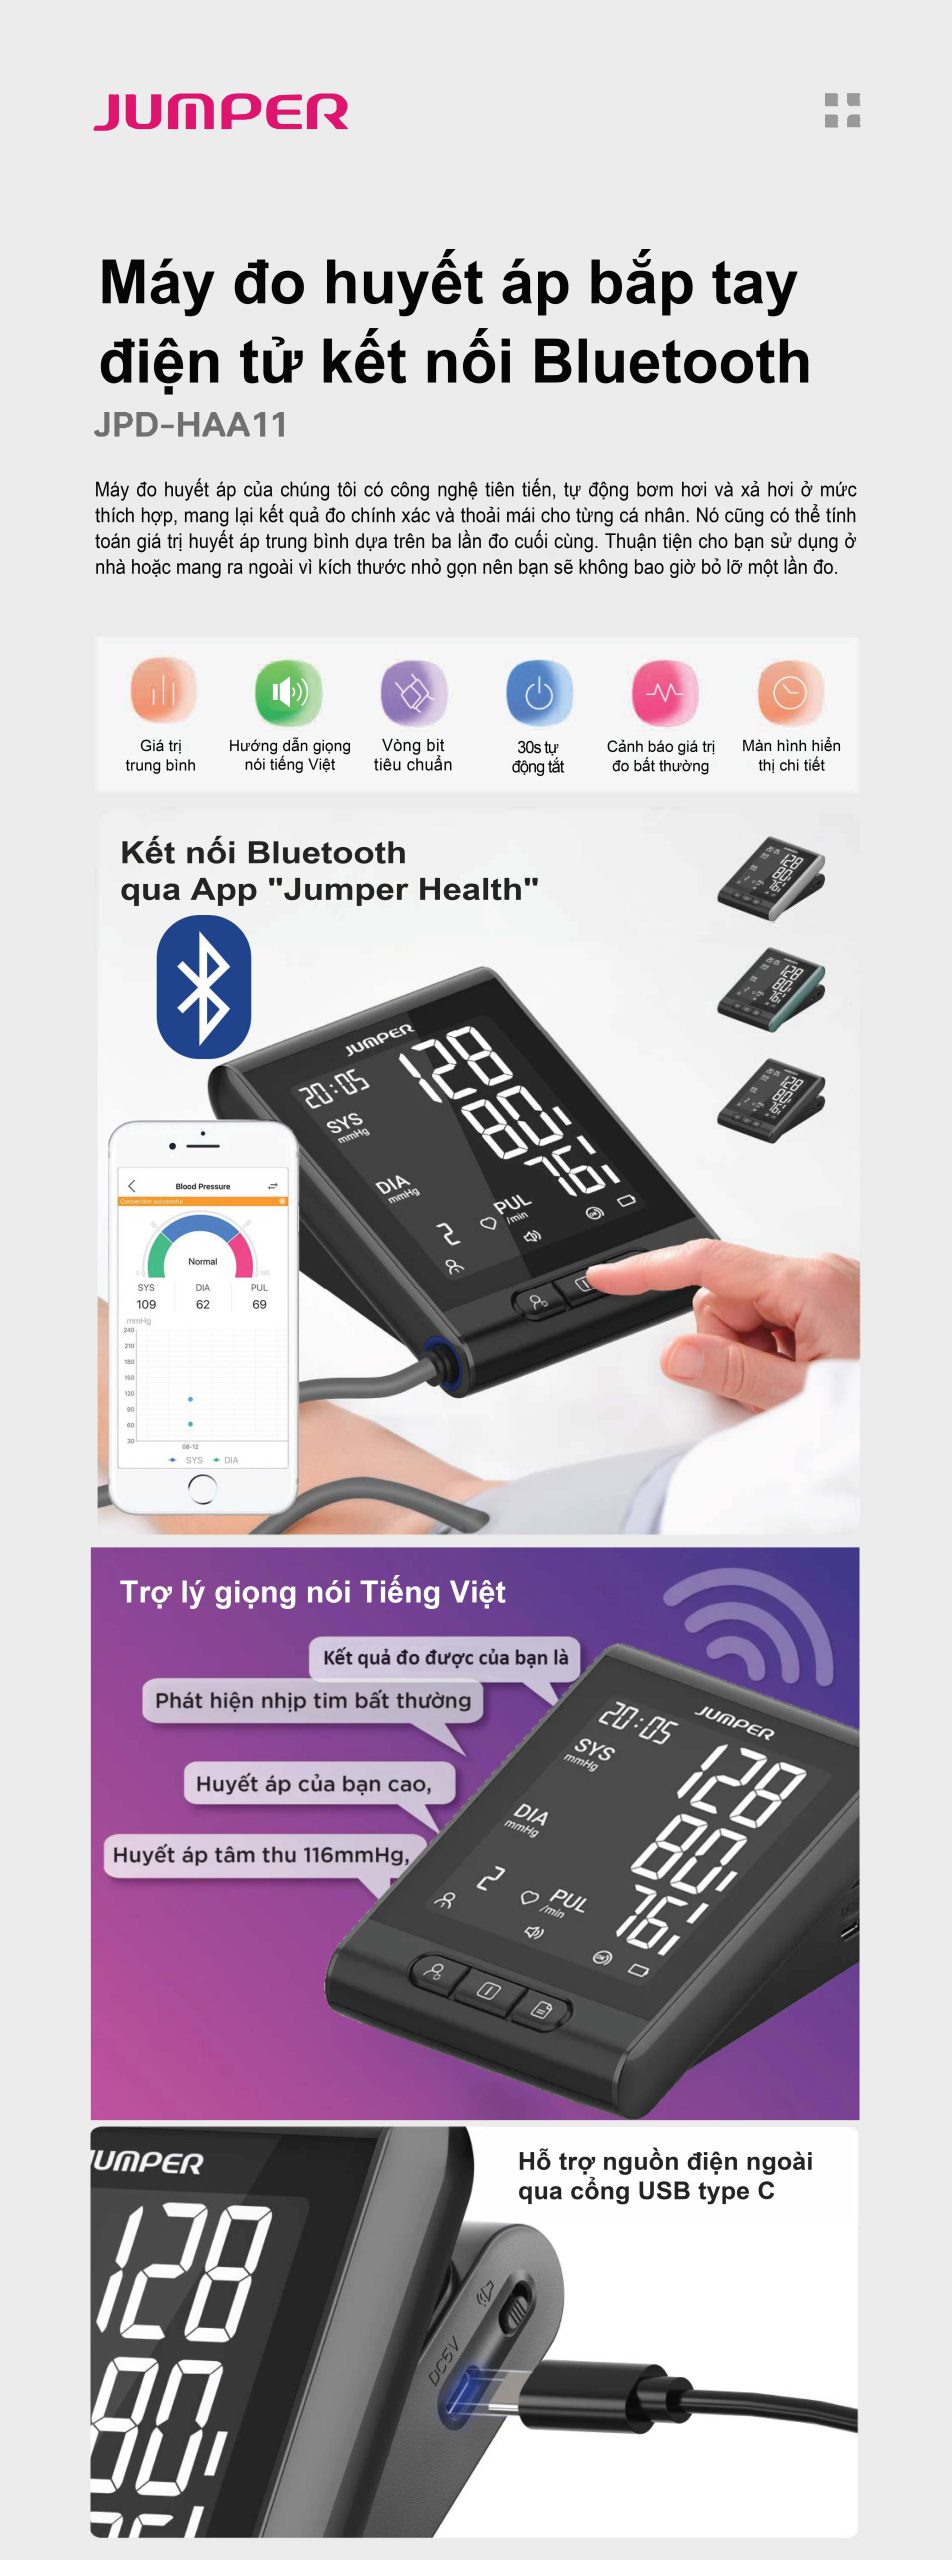 Máy đo huyết áp bắp tay điện tử kết nối Bluetooth Jumper JPD-HAA11